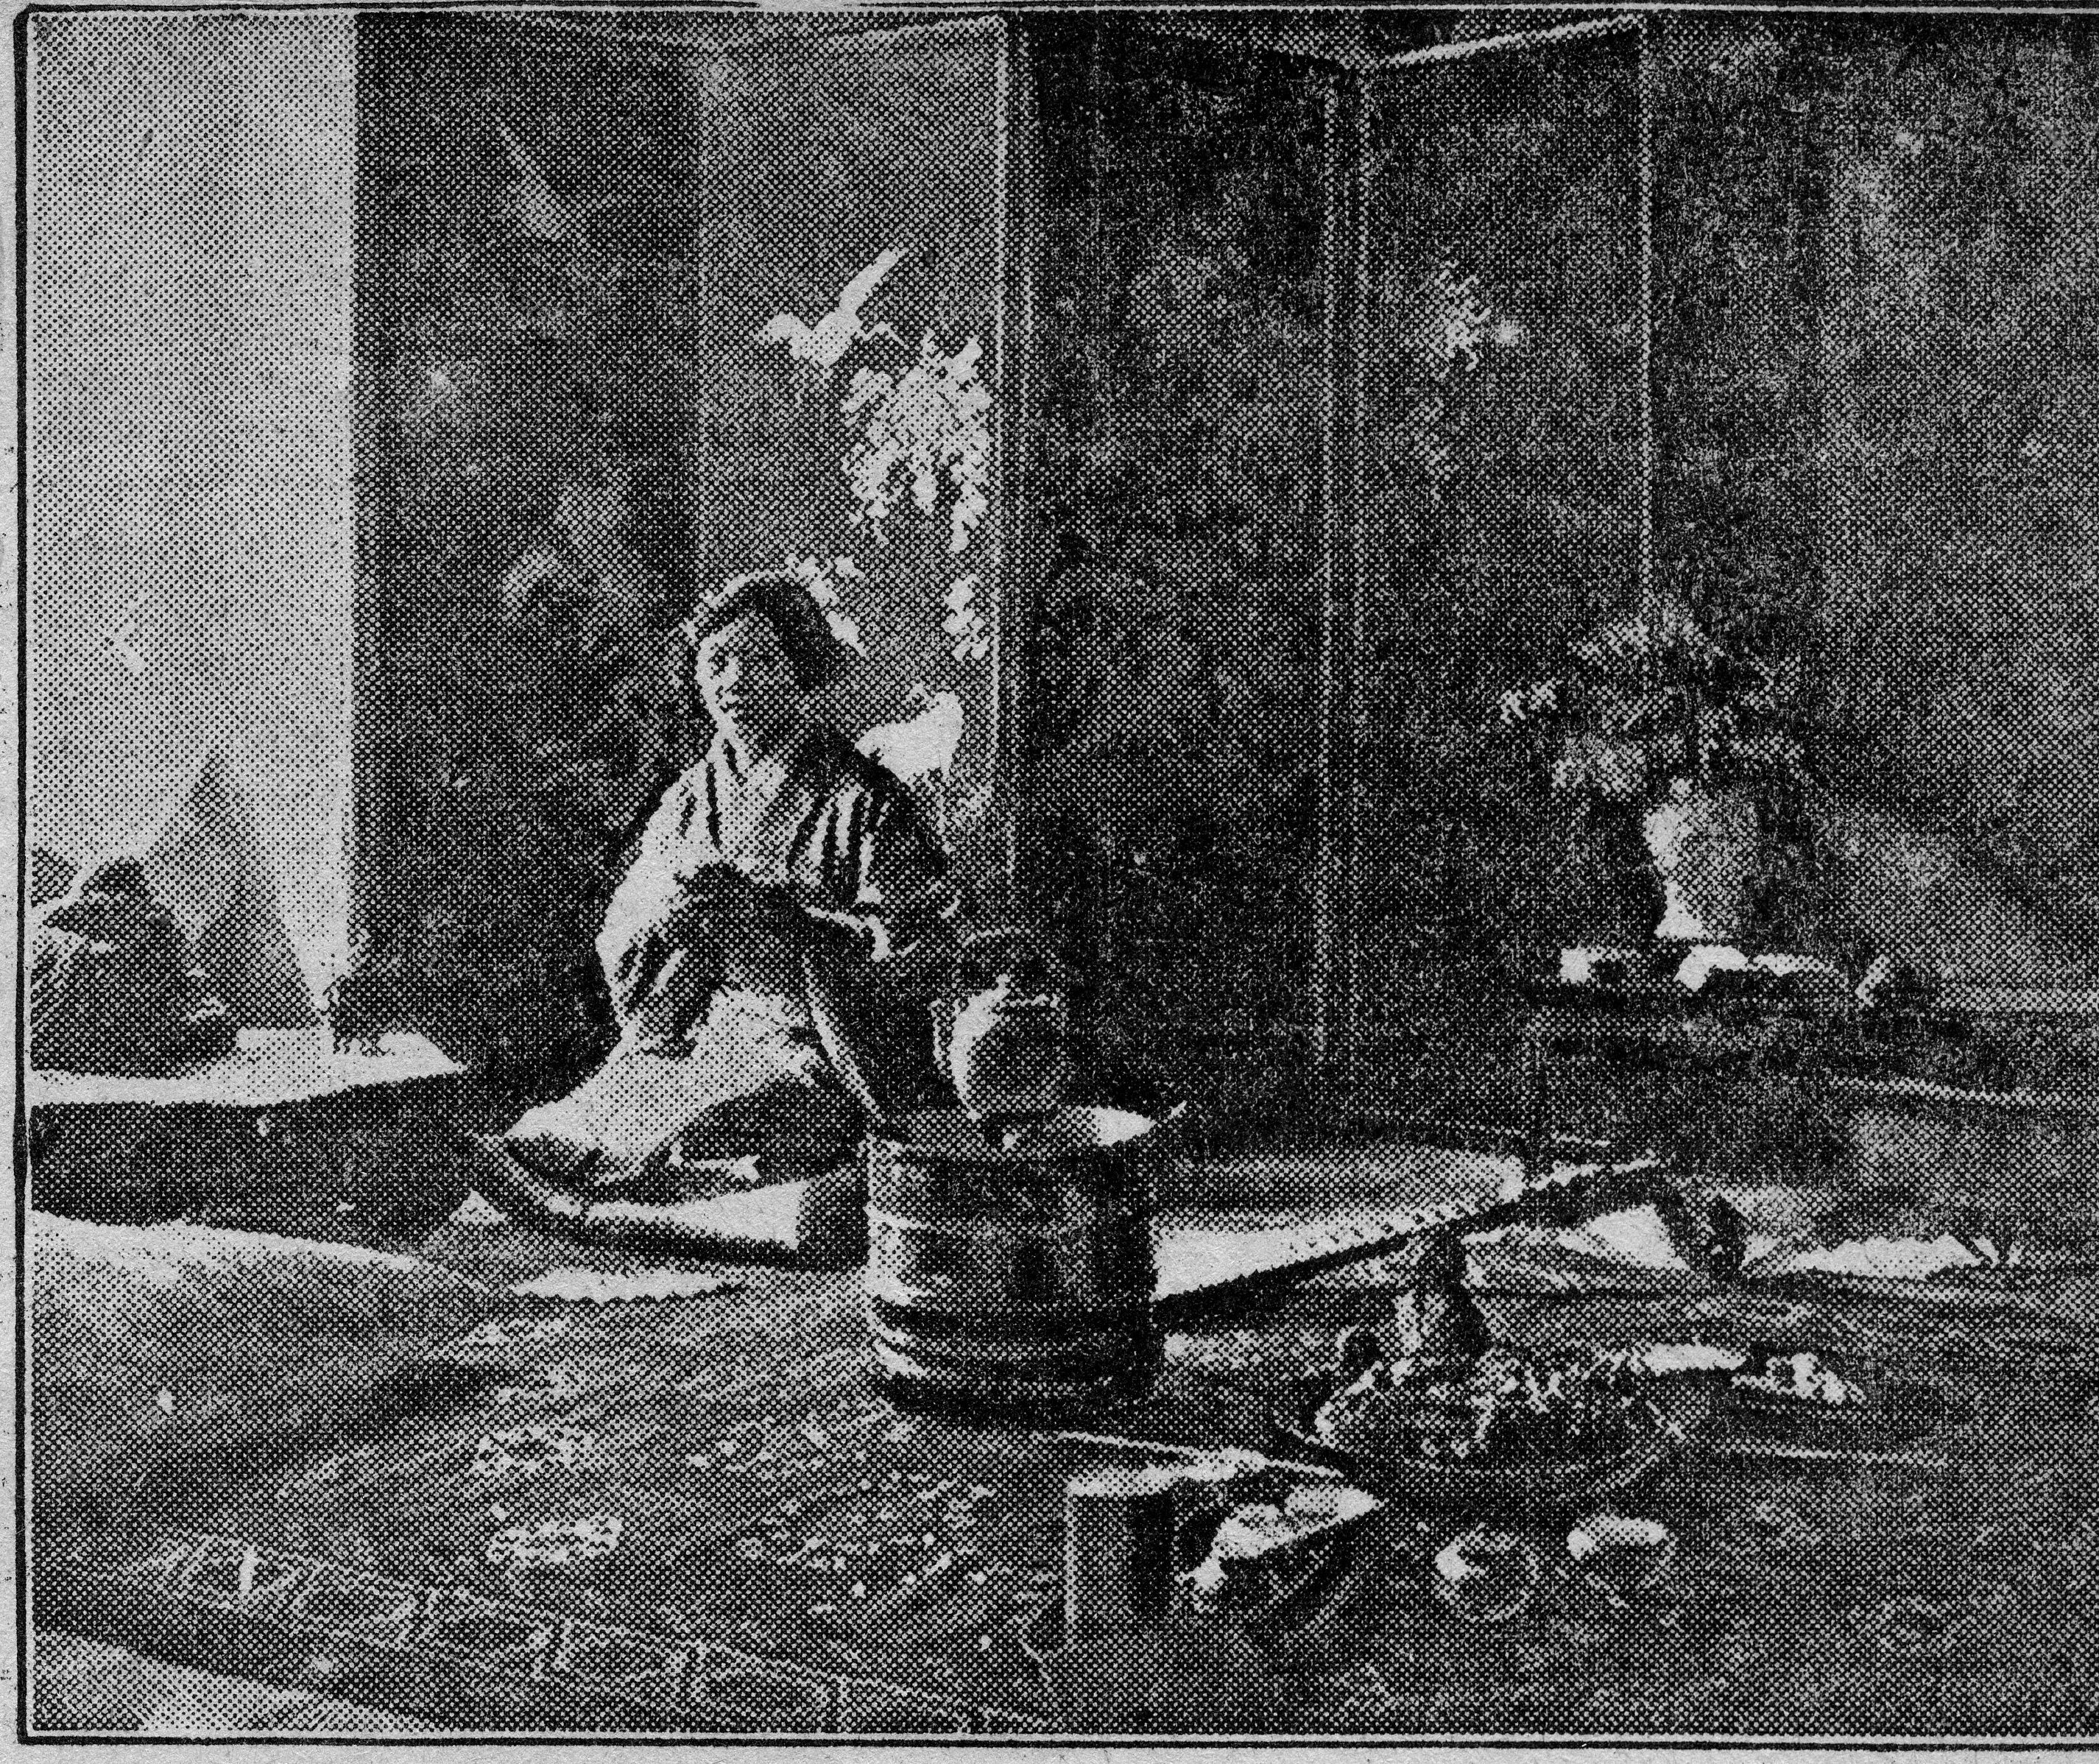 Slika 5: Marija Tsuneko Skušek v čajni sobi na razstavi pogrnjenih miz,
                        junija 1927